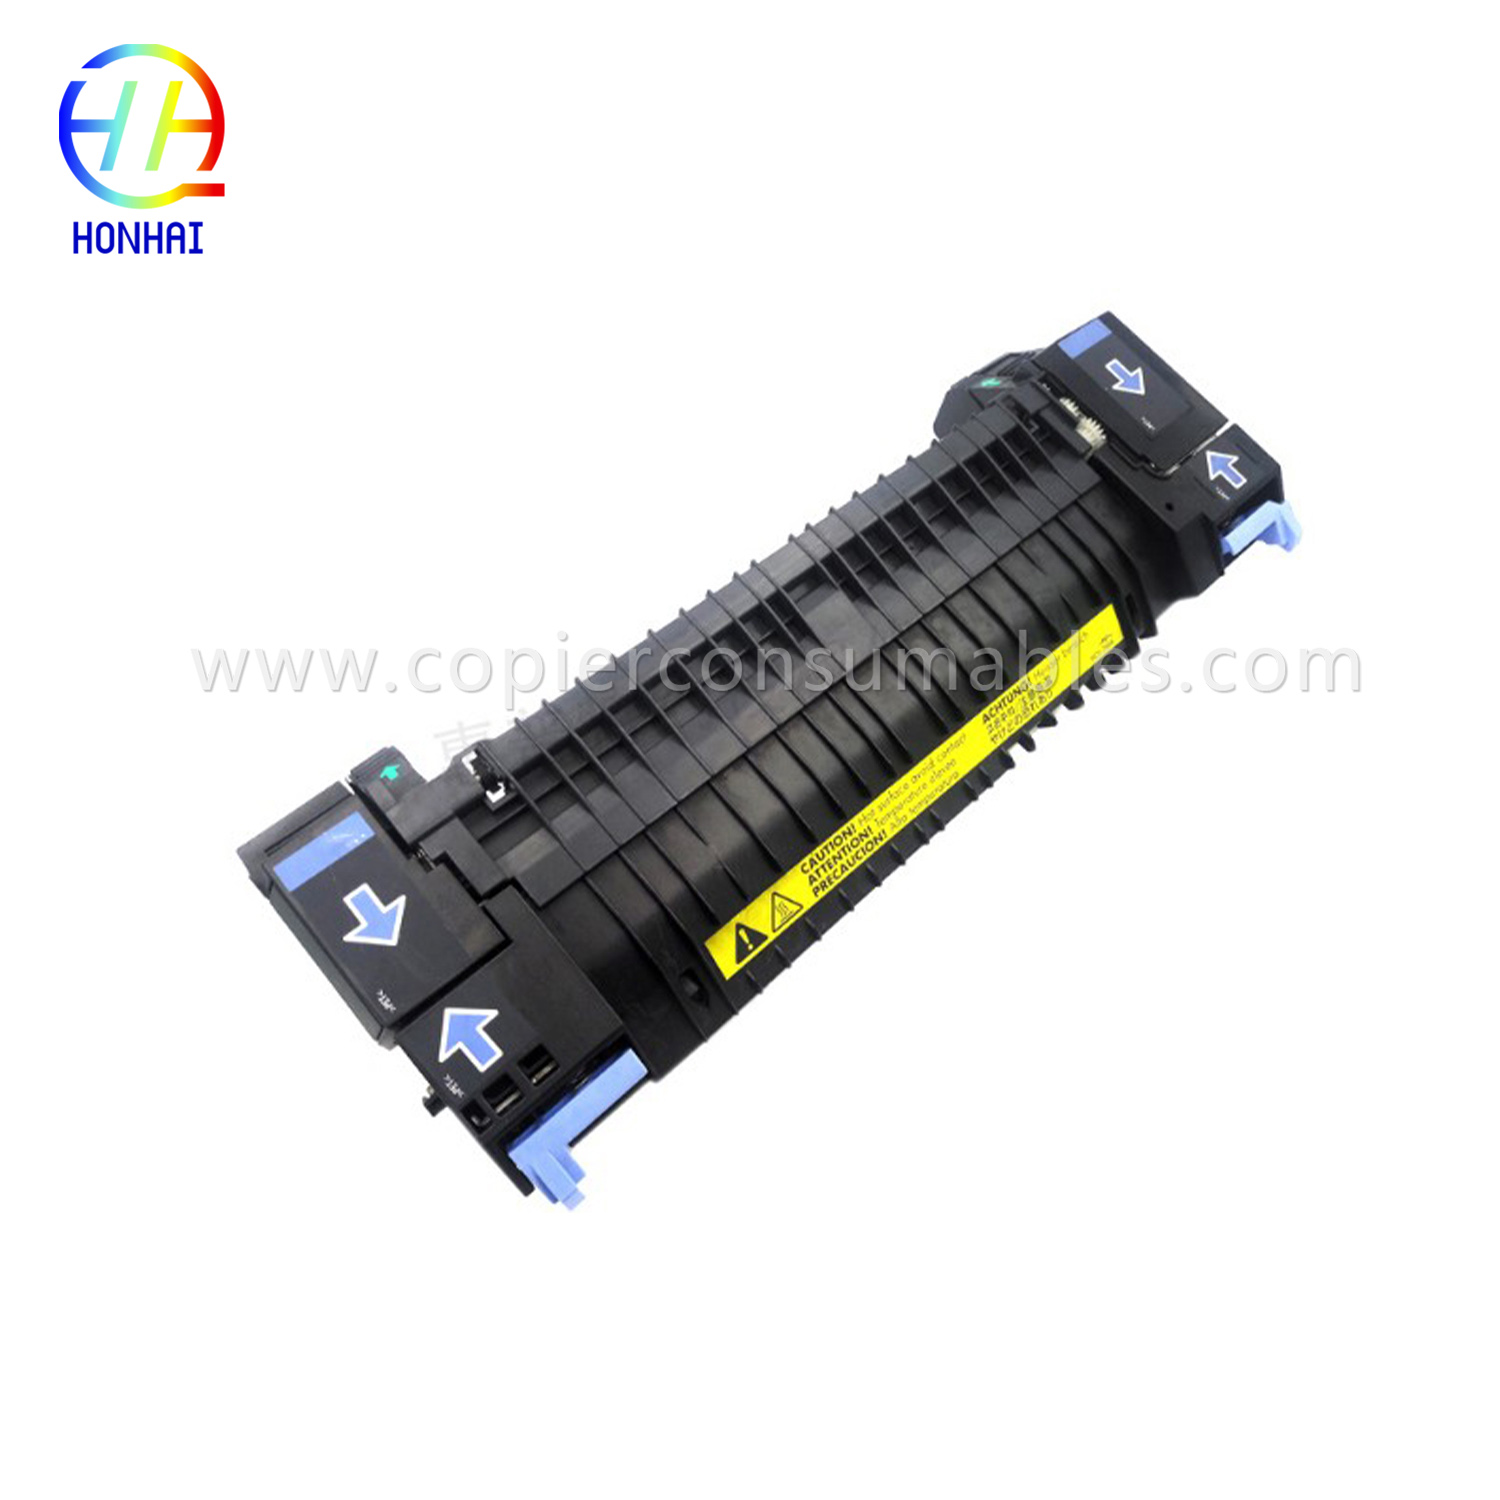 Majelis Fuser pikeun HP Color LaserJet 2700 3000 3600 3800 CP3505 RM1-4348 RM1-2763 RM1-2665